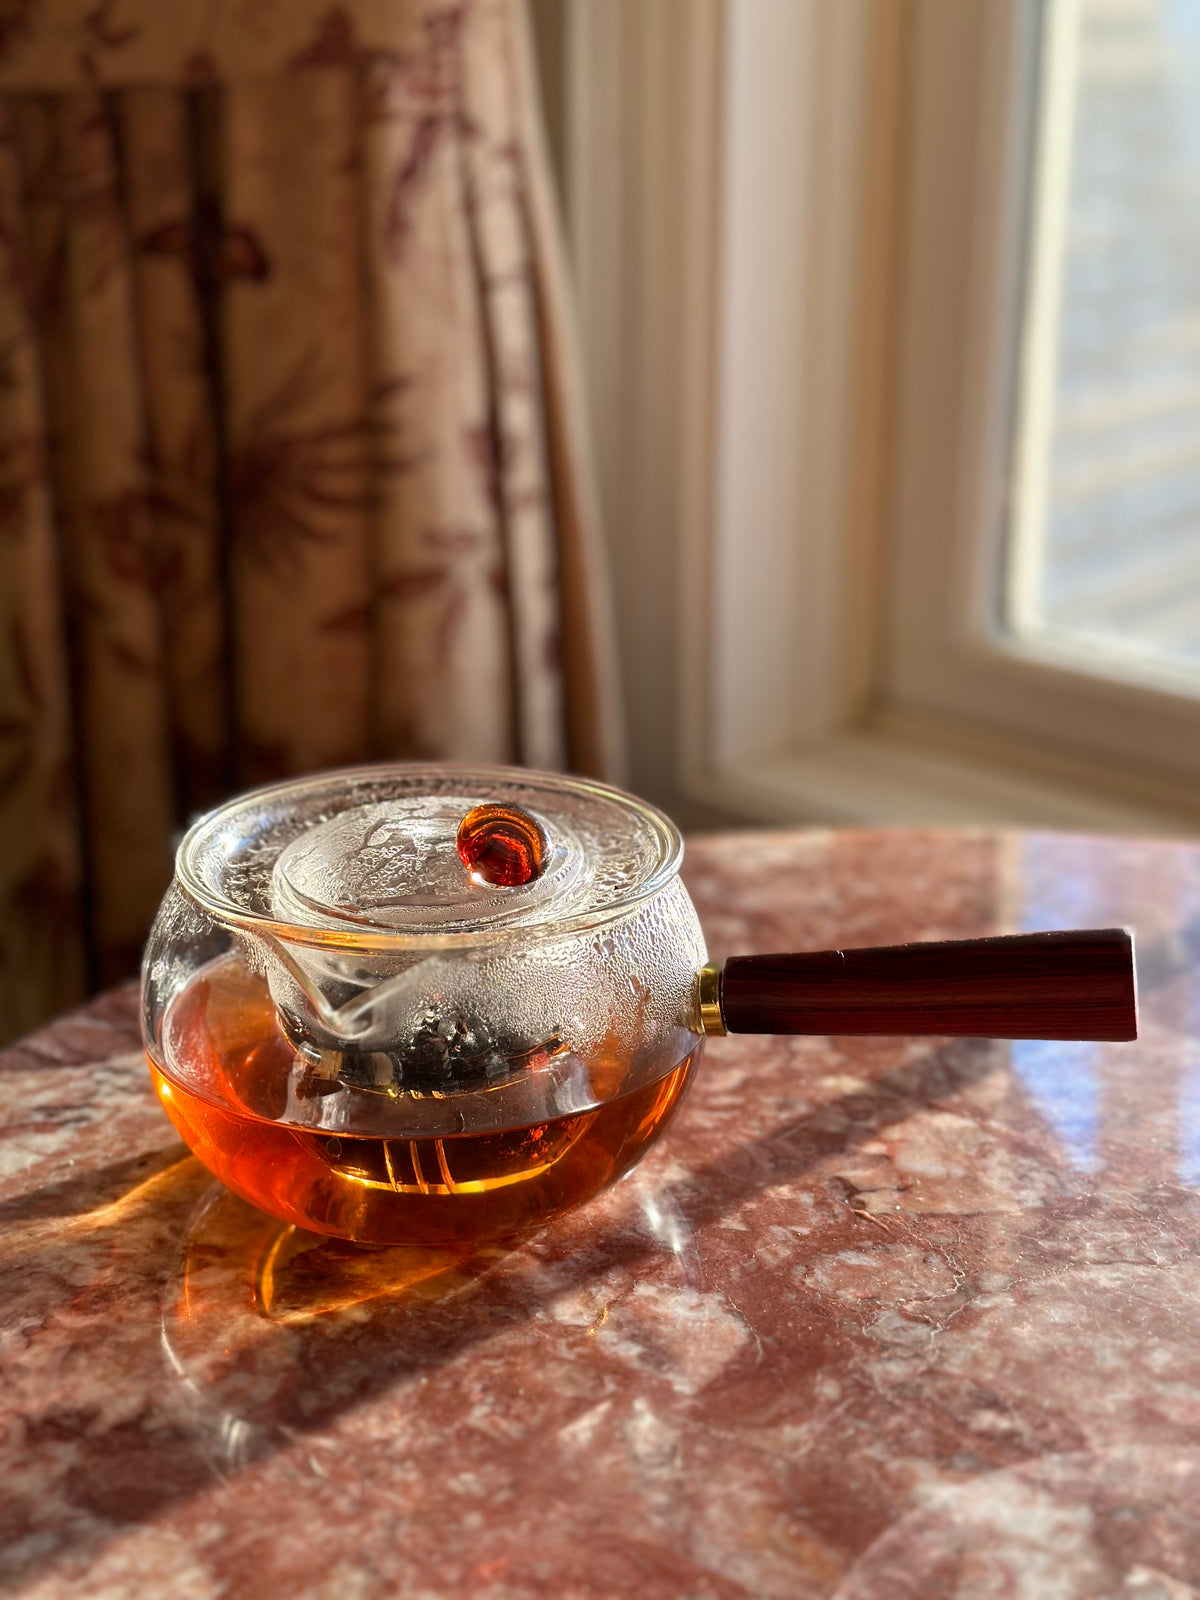 Glass Teapot High Temperature Glass Kettle Tea Set Wooden Handle